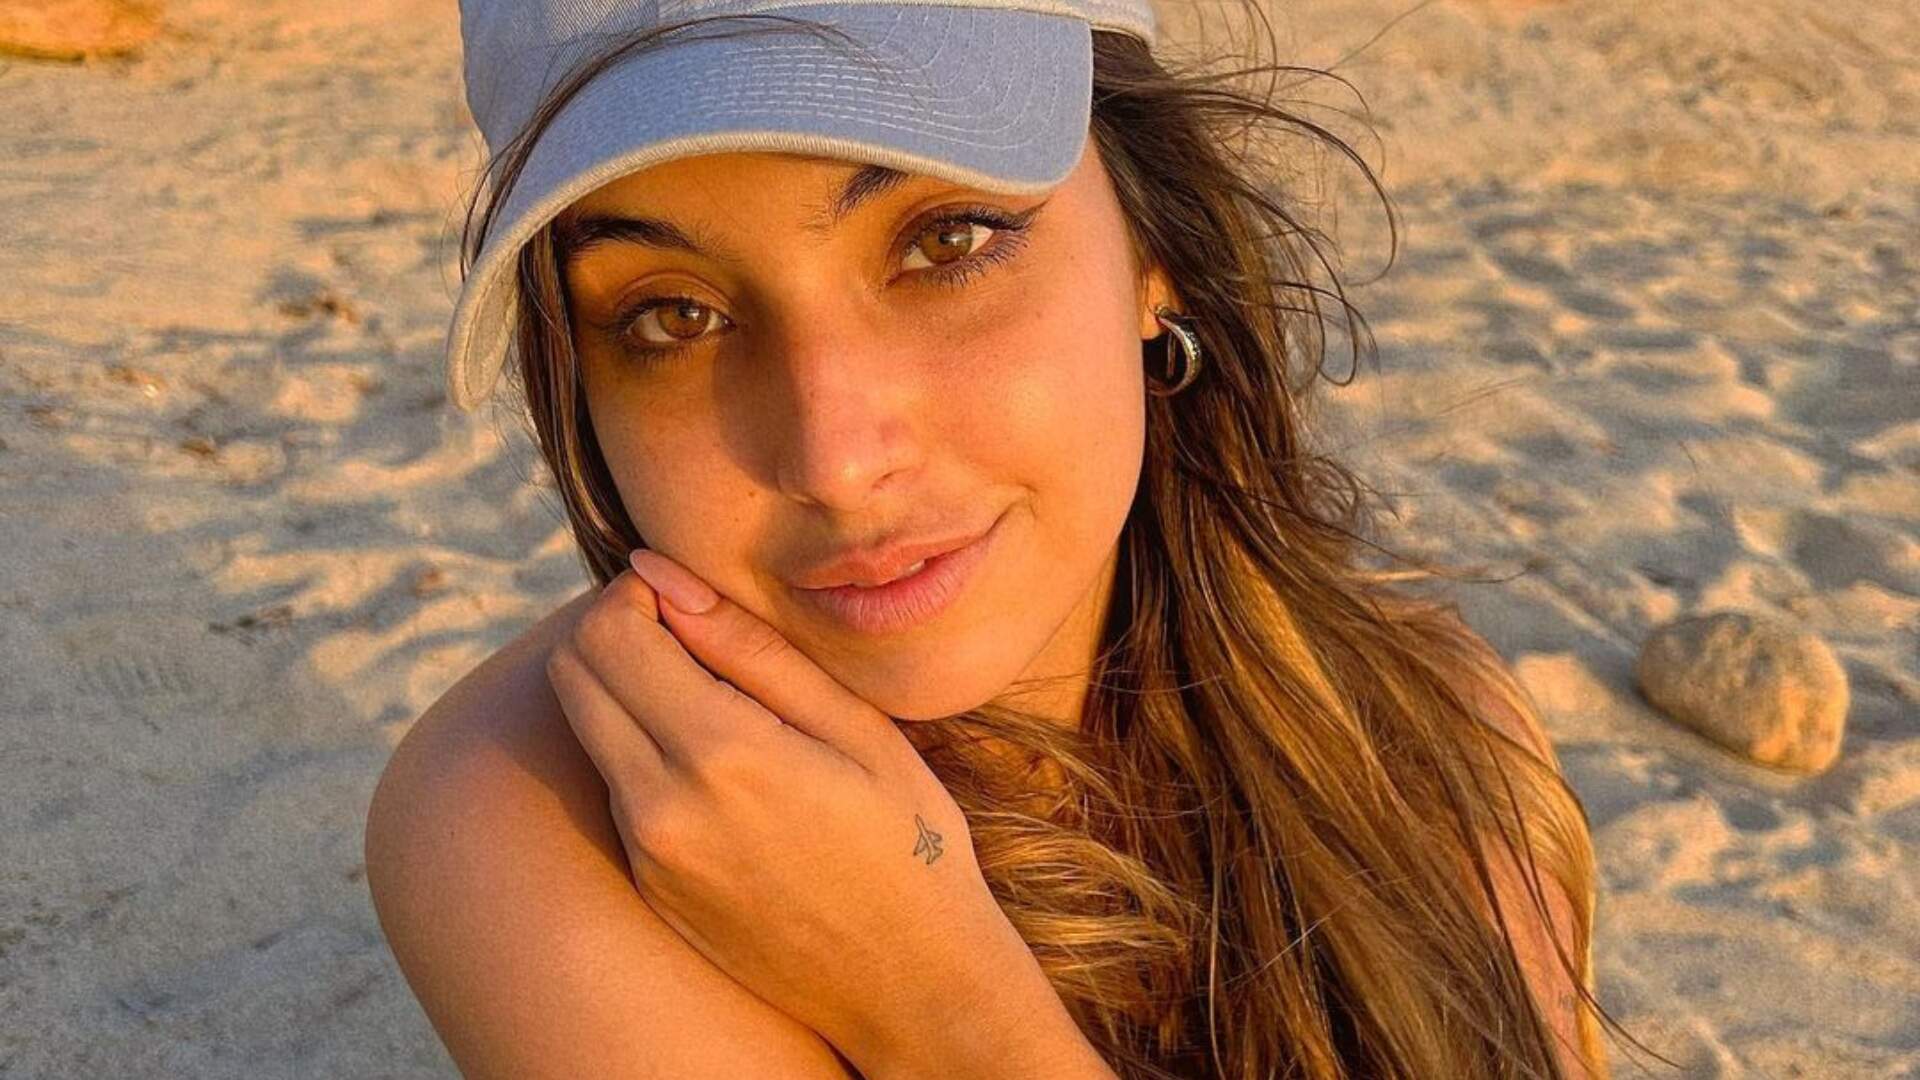 Vanessa Lopes provoca na piscina com fio-dental cavado no limite da virilha: “Agora é assim” - Metropolitana FM